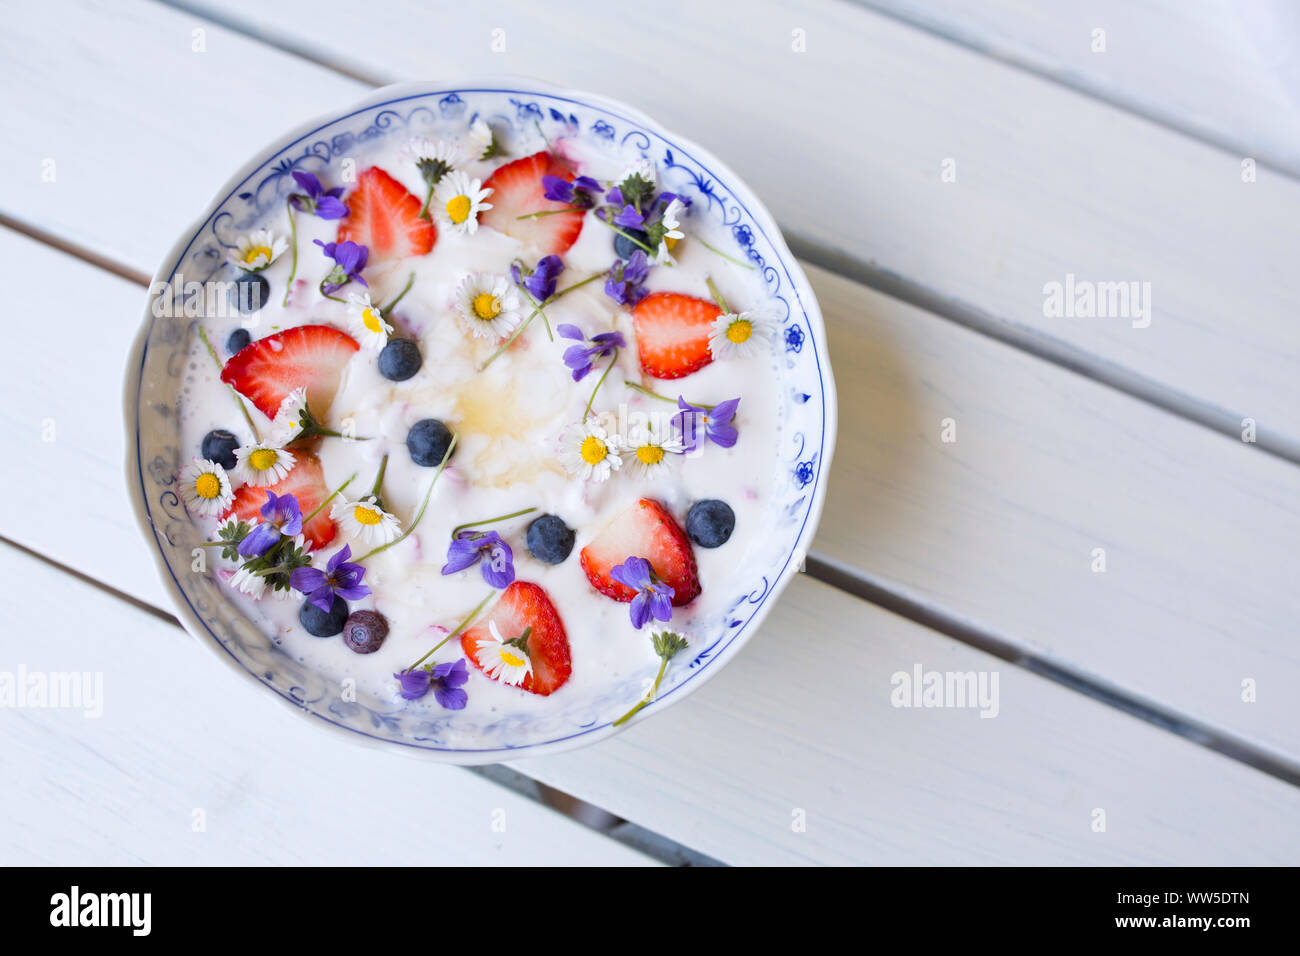 Le yogourt aux fraises, bleuets et fleurs sur table en bois blanc Banque D'Images